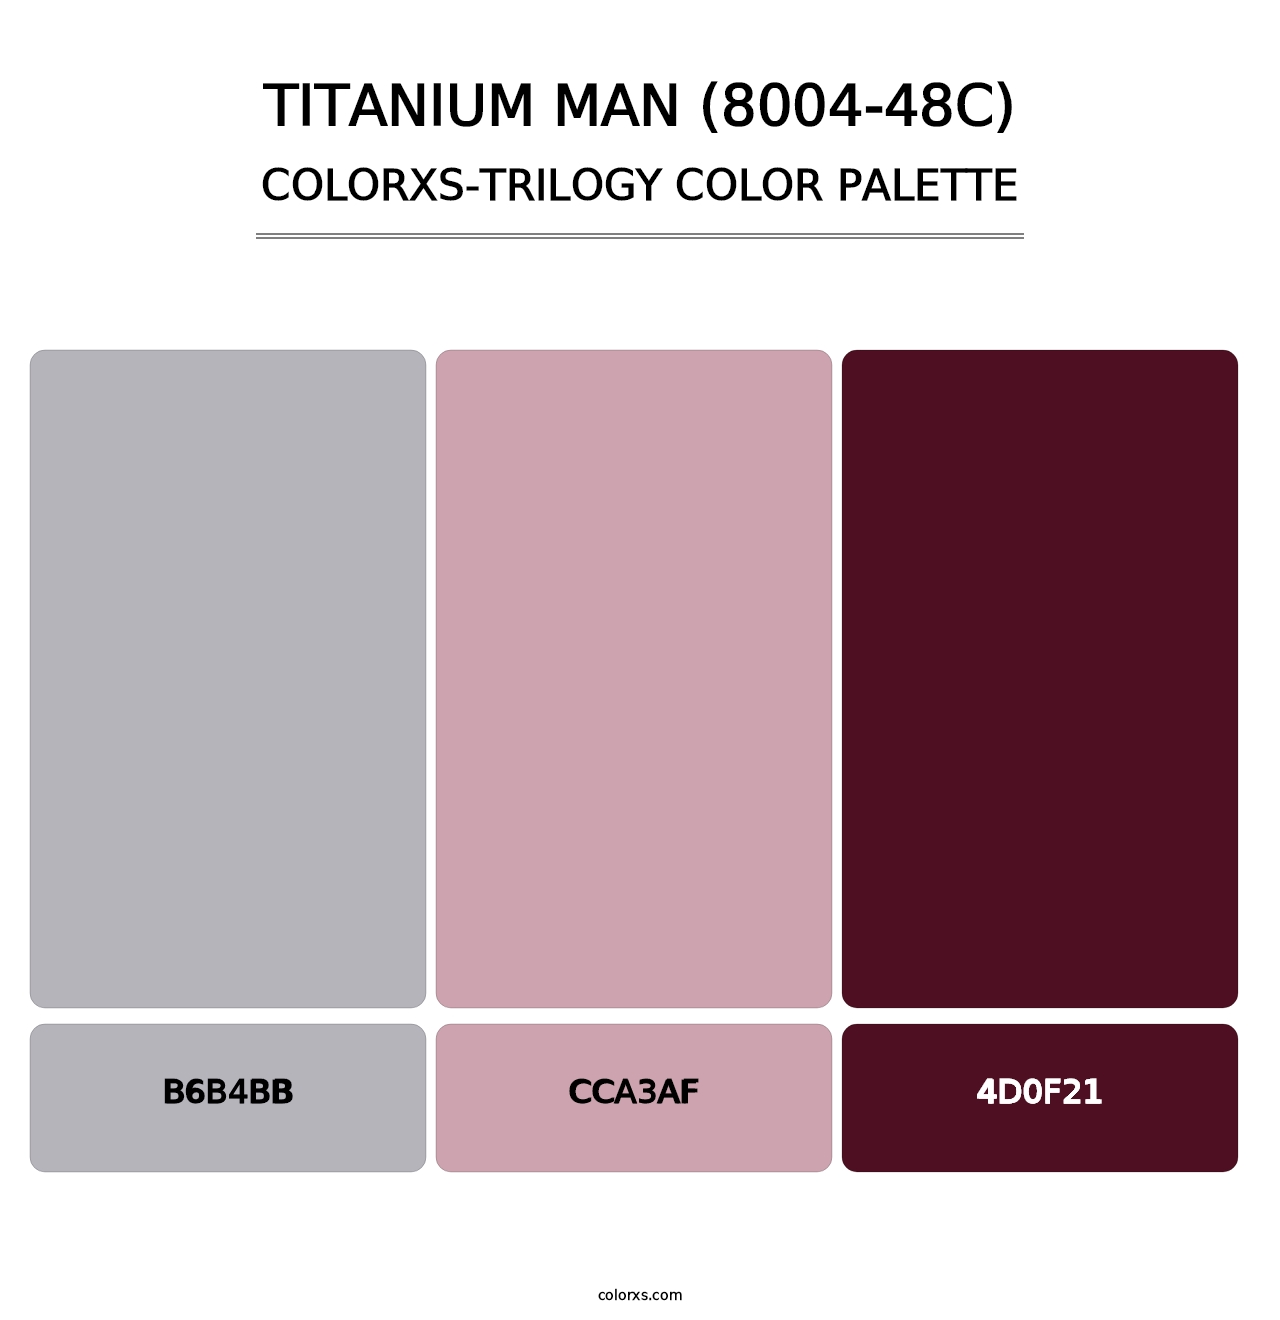 Titanium Man (8004-48C) - Colorxs Trilogy Palette